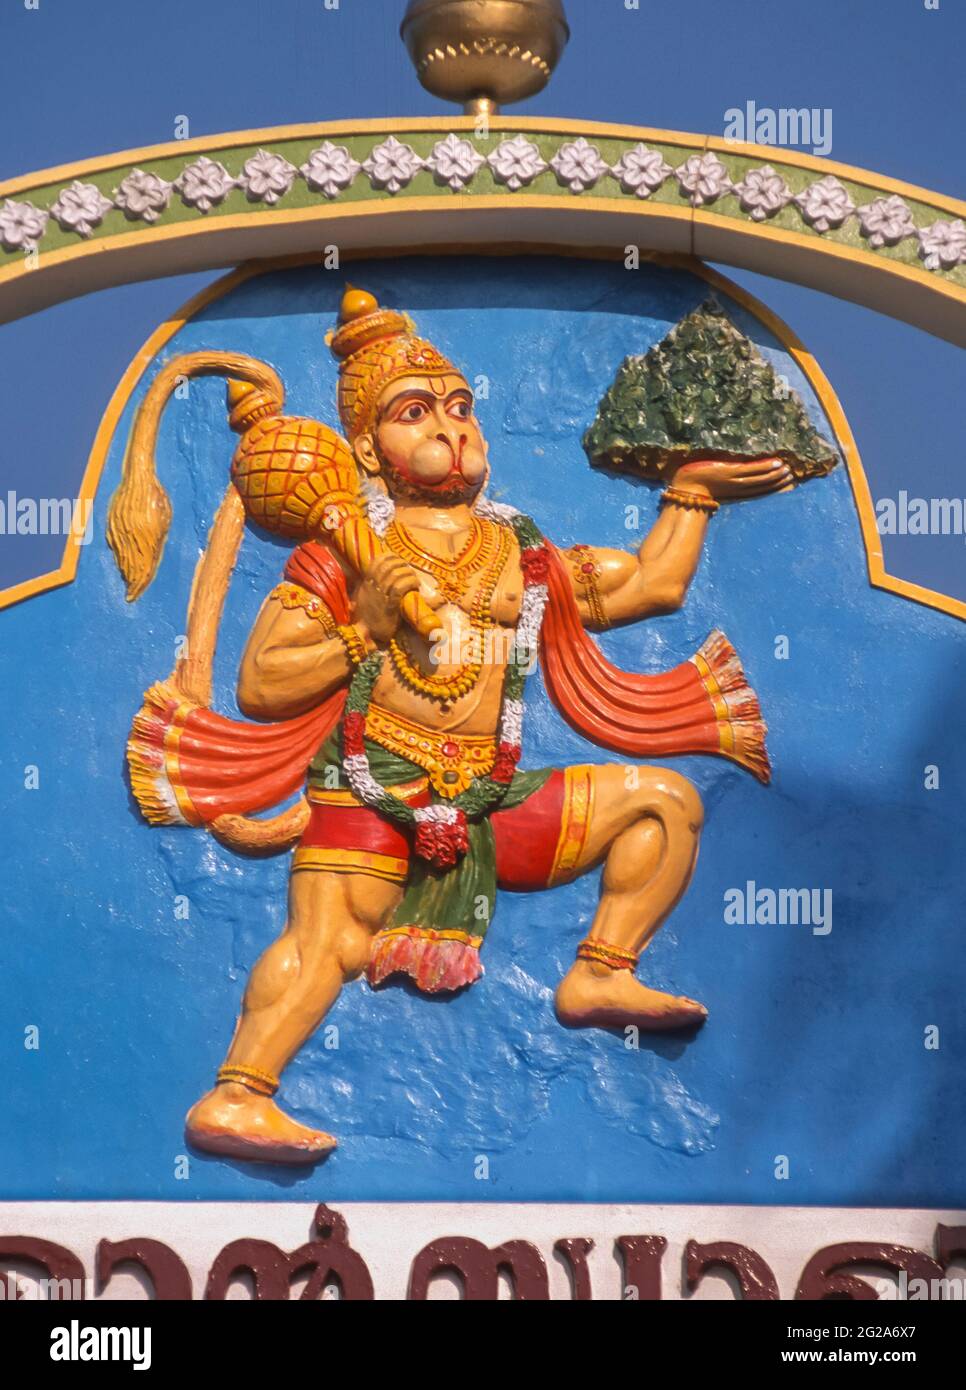 KERALA, INDIA - representación del dios hindú Hanuman sobre la puerta del templo. Él levanta la montaña que lleva hierba como demostración de la fuerza. Foto de stock